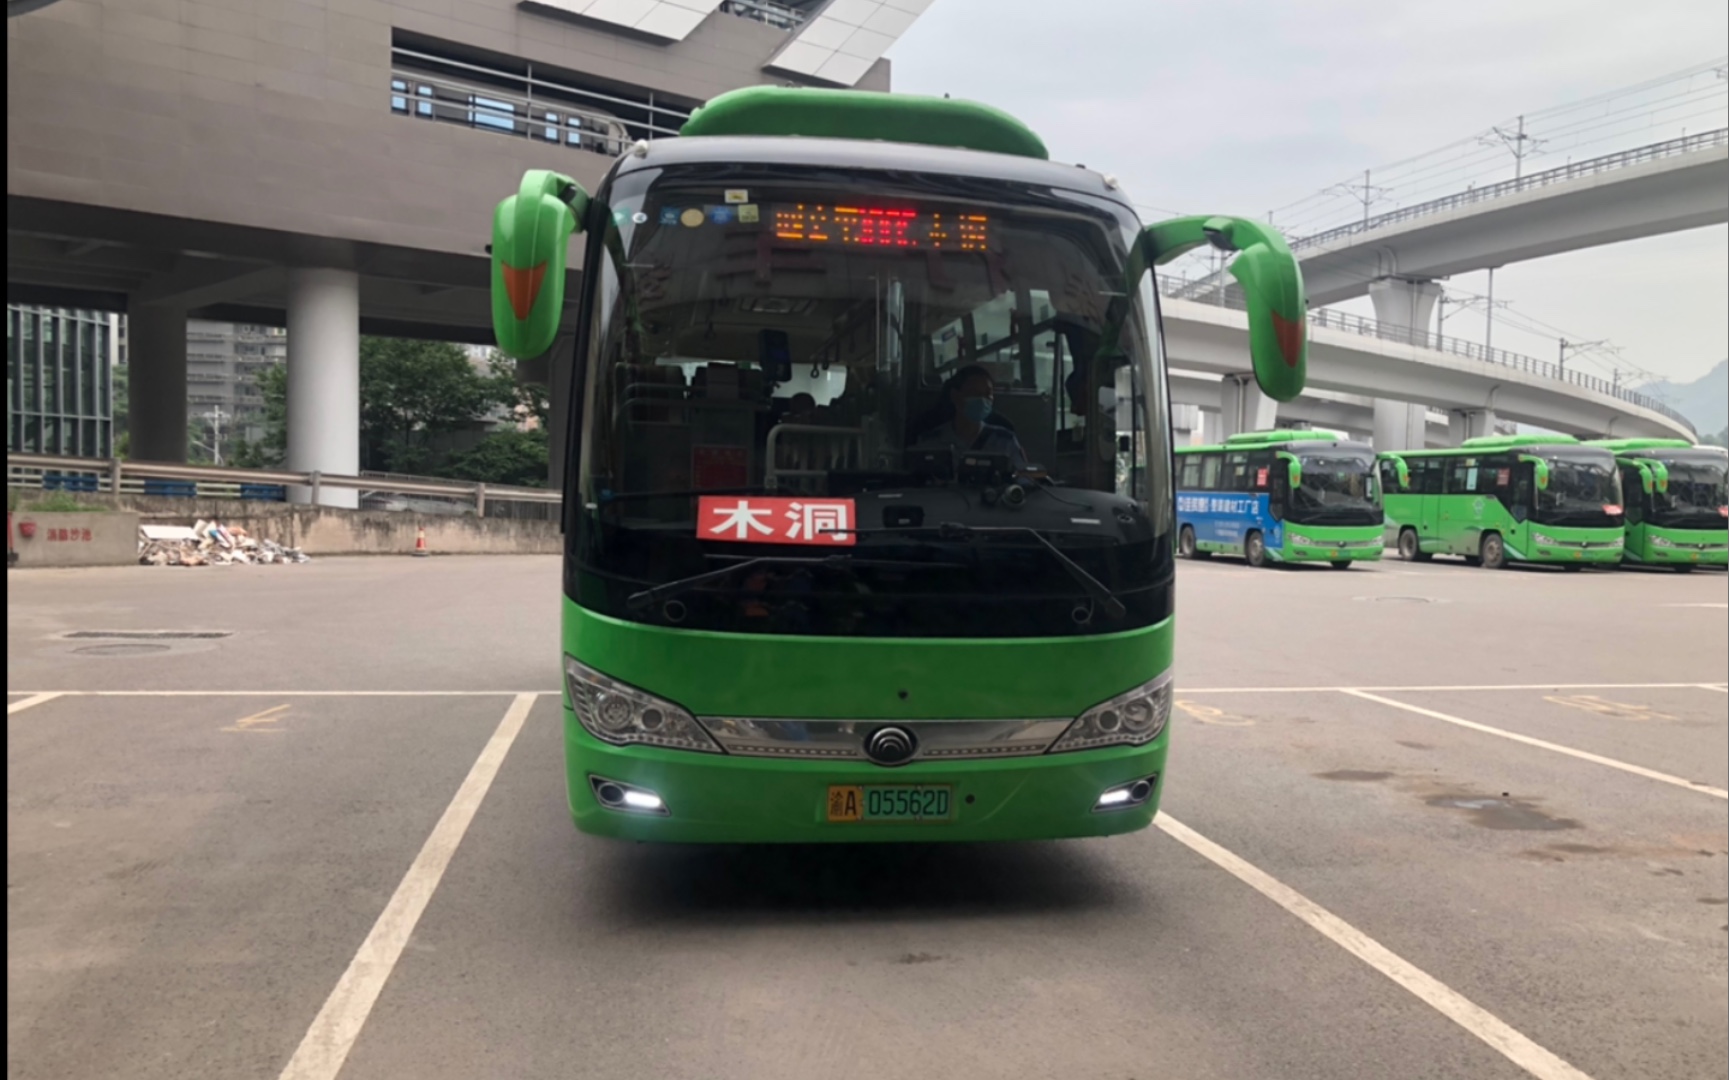 重庆首批7座纯电动“迷你”公交车亮相街头 票价2元